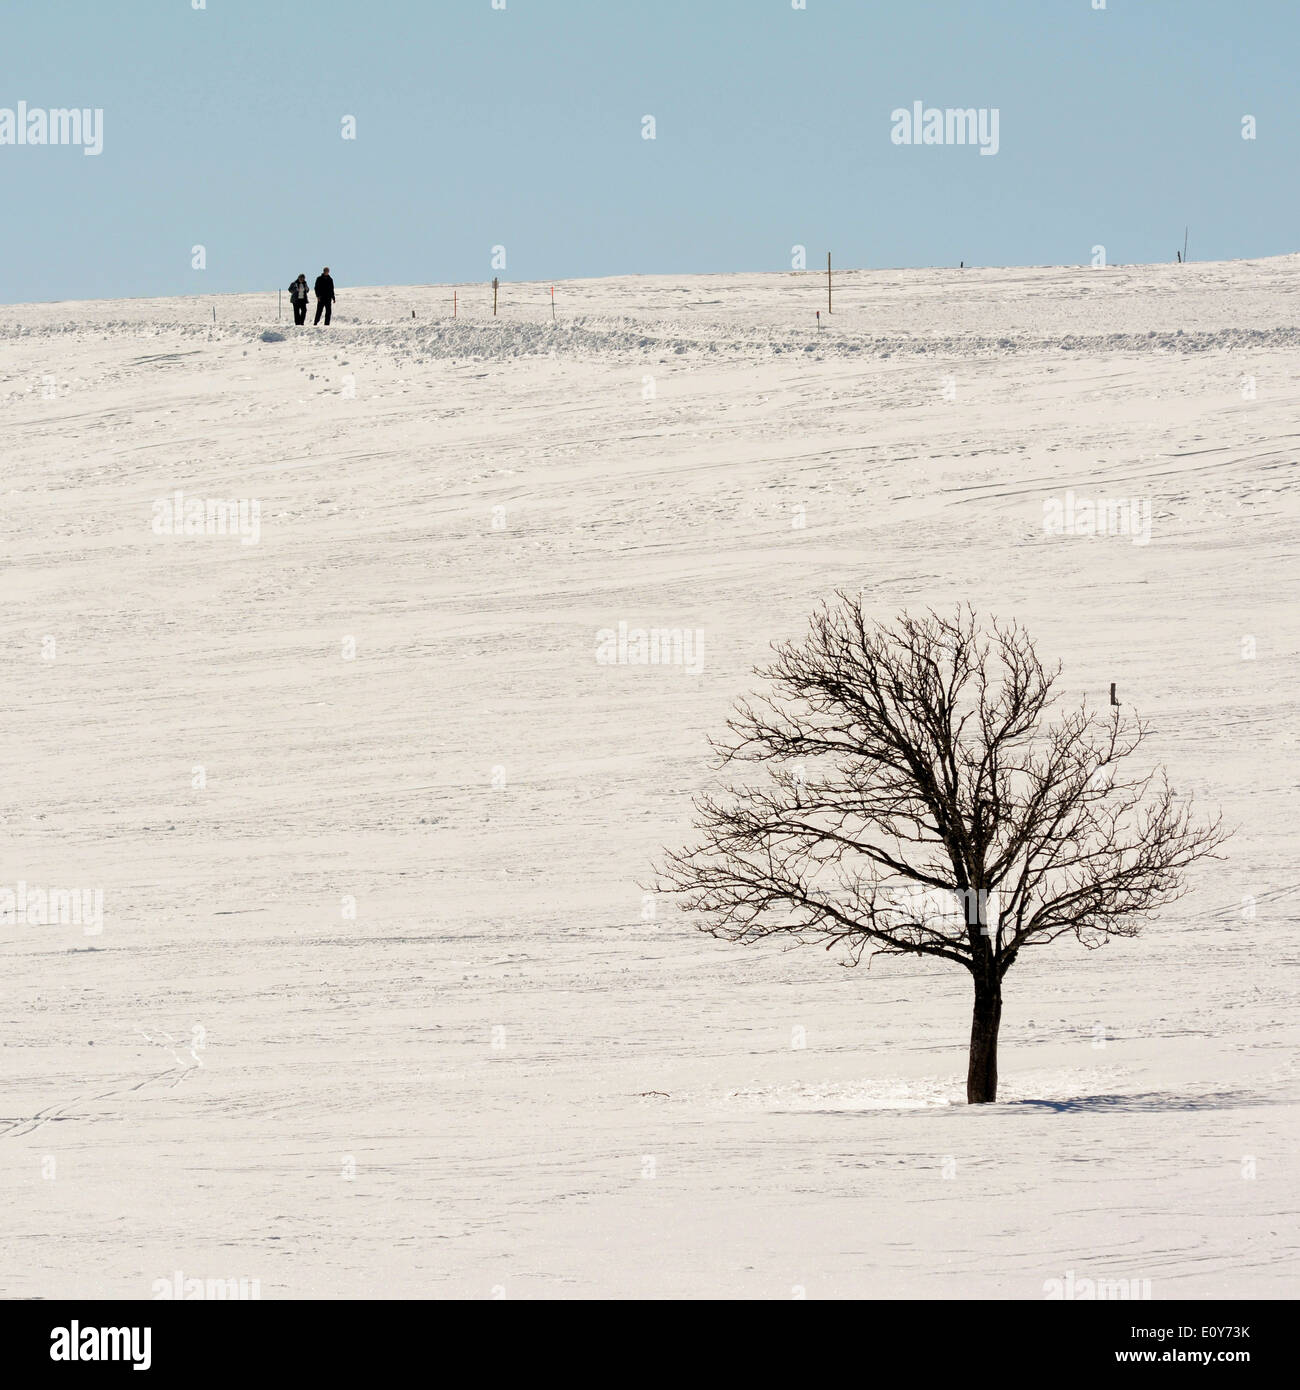 Deux marcheurs dans une scène d'hiver paysage Banque D'Images